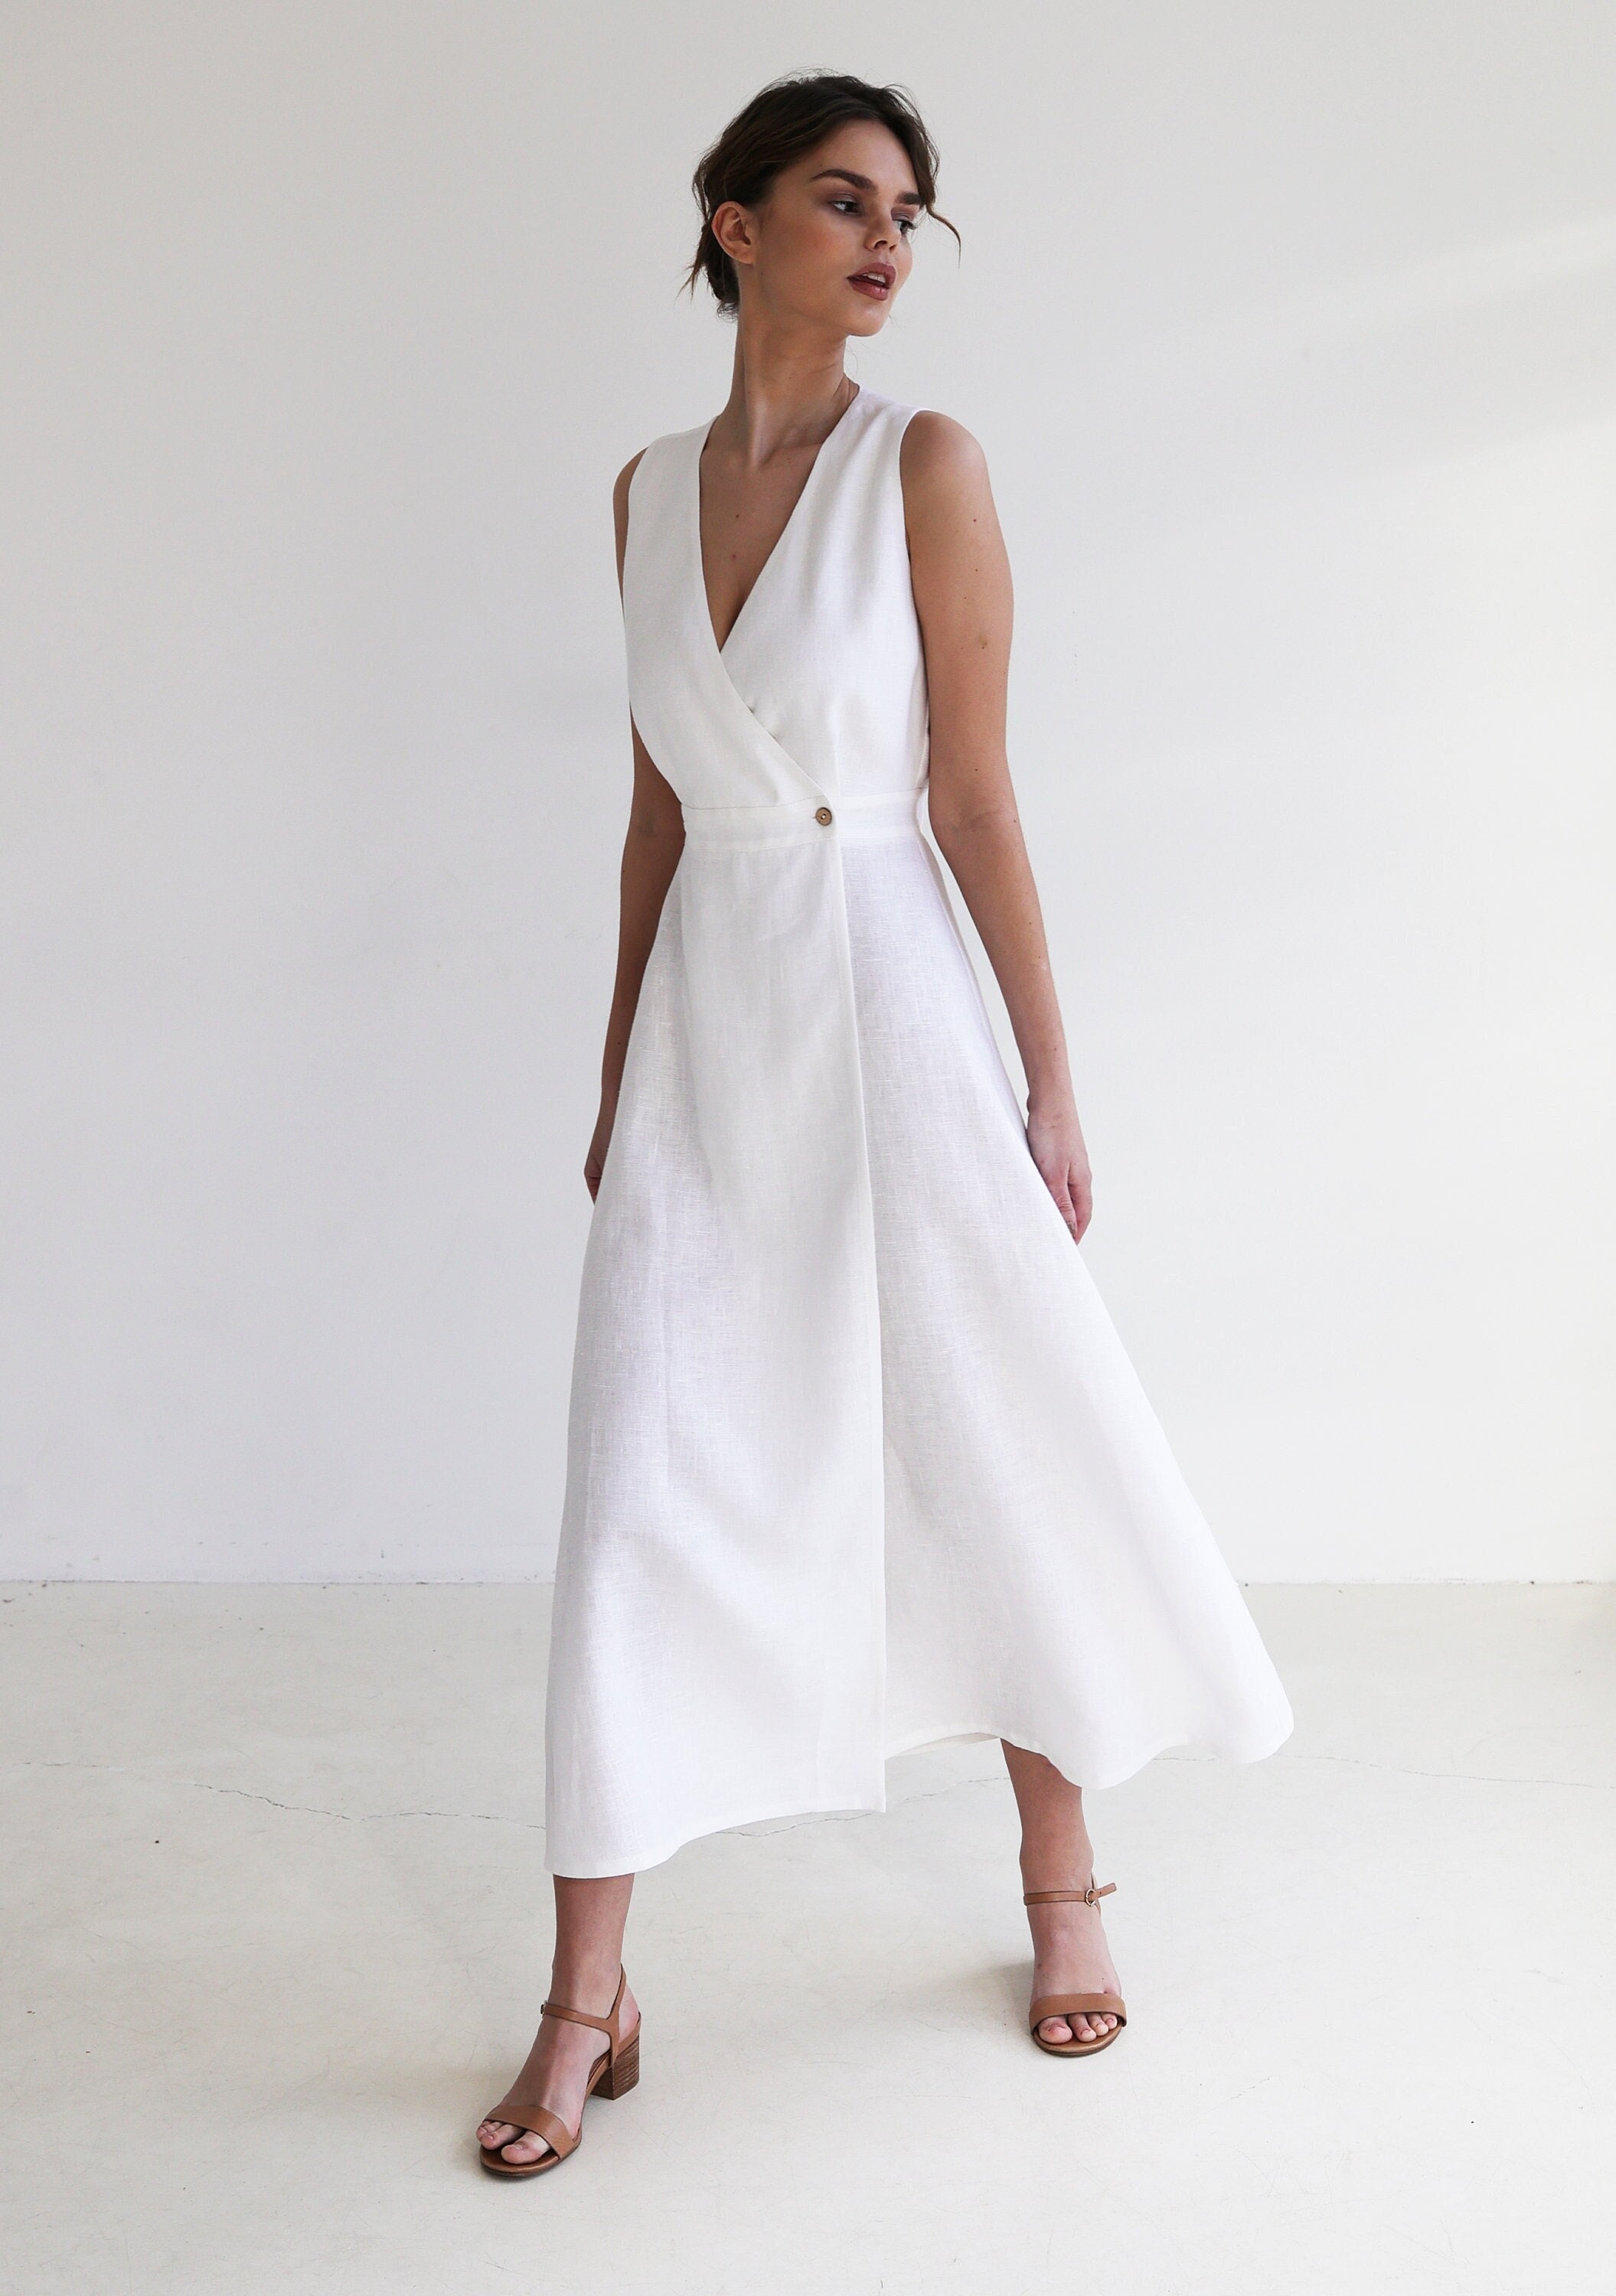 Linen Maxi Dress RIVIERA, Long Sleeveless Dress, White Linen Wrap